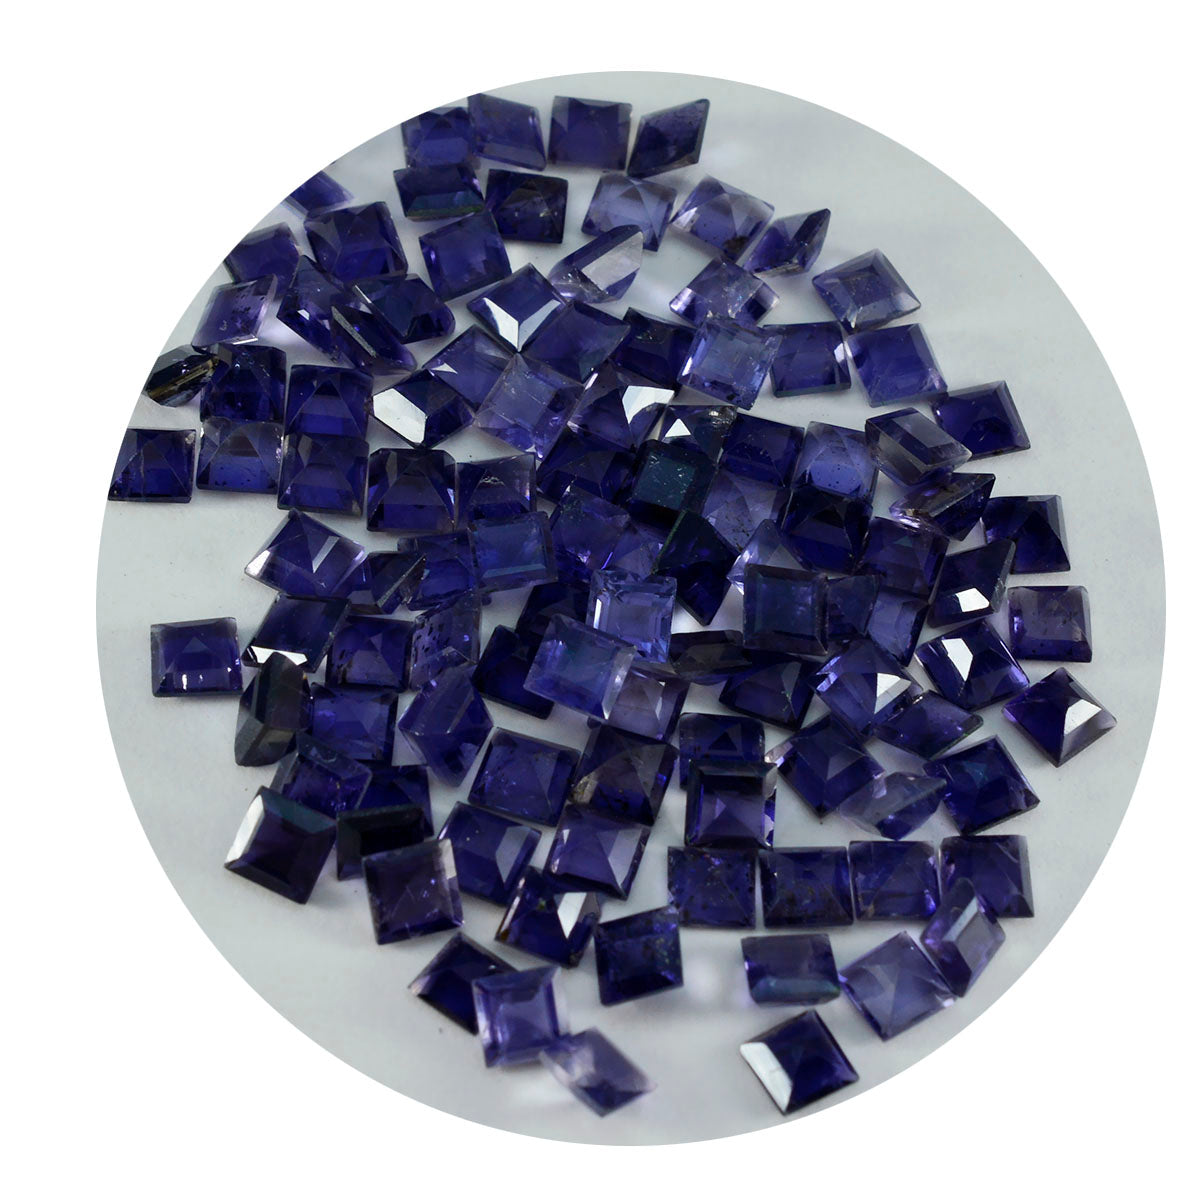 riyogems 1шт синий иолит ограненный 5x5 мм квадратной формы качественные драгоценные камни